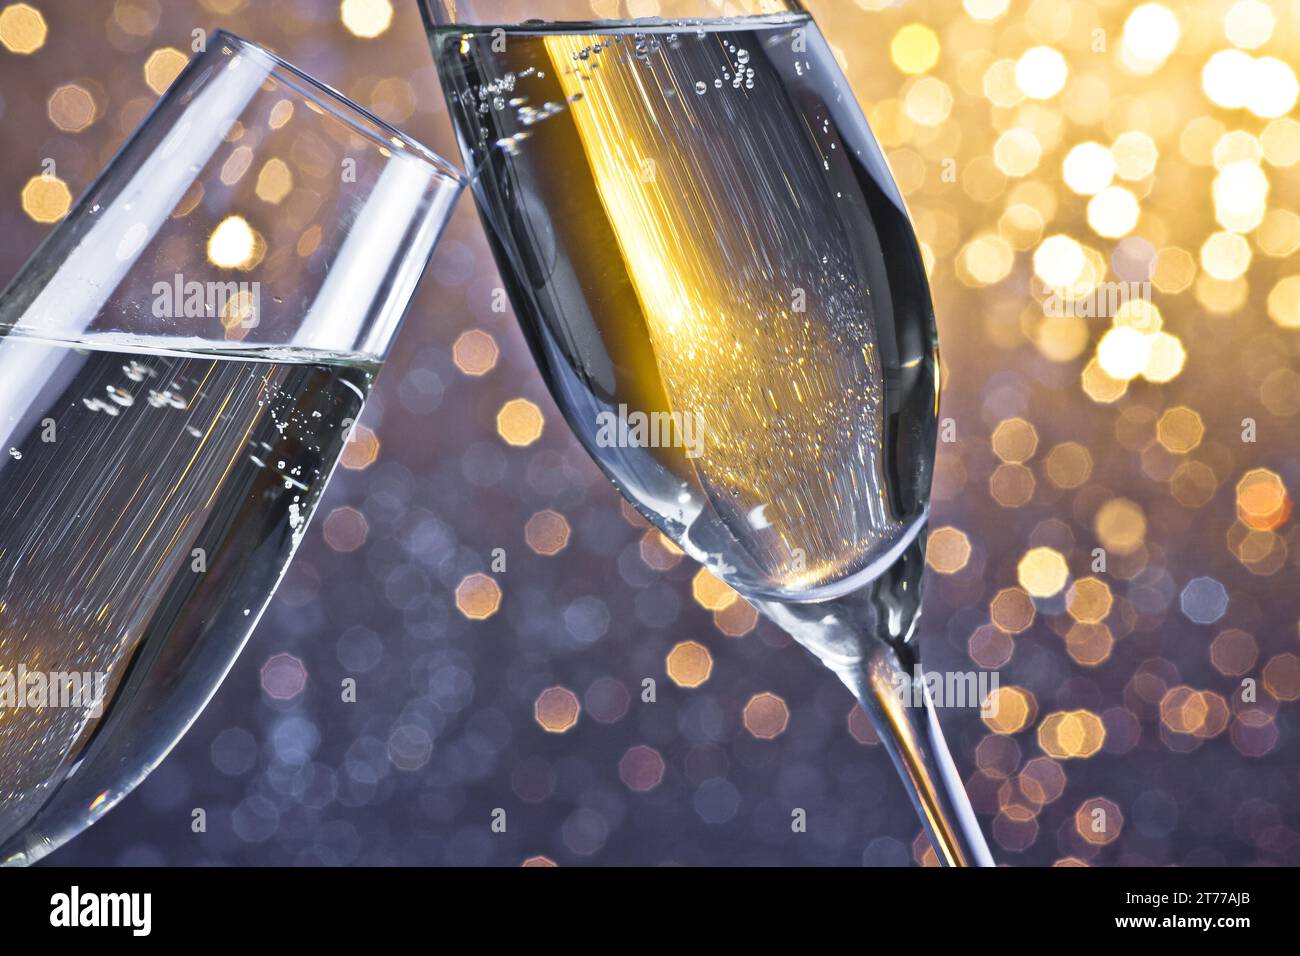 due flauti di champagne con bolle d'oro fanno il tifo su sfondo bokeh chiaro con spazio per il testo Foto Stock